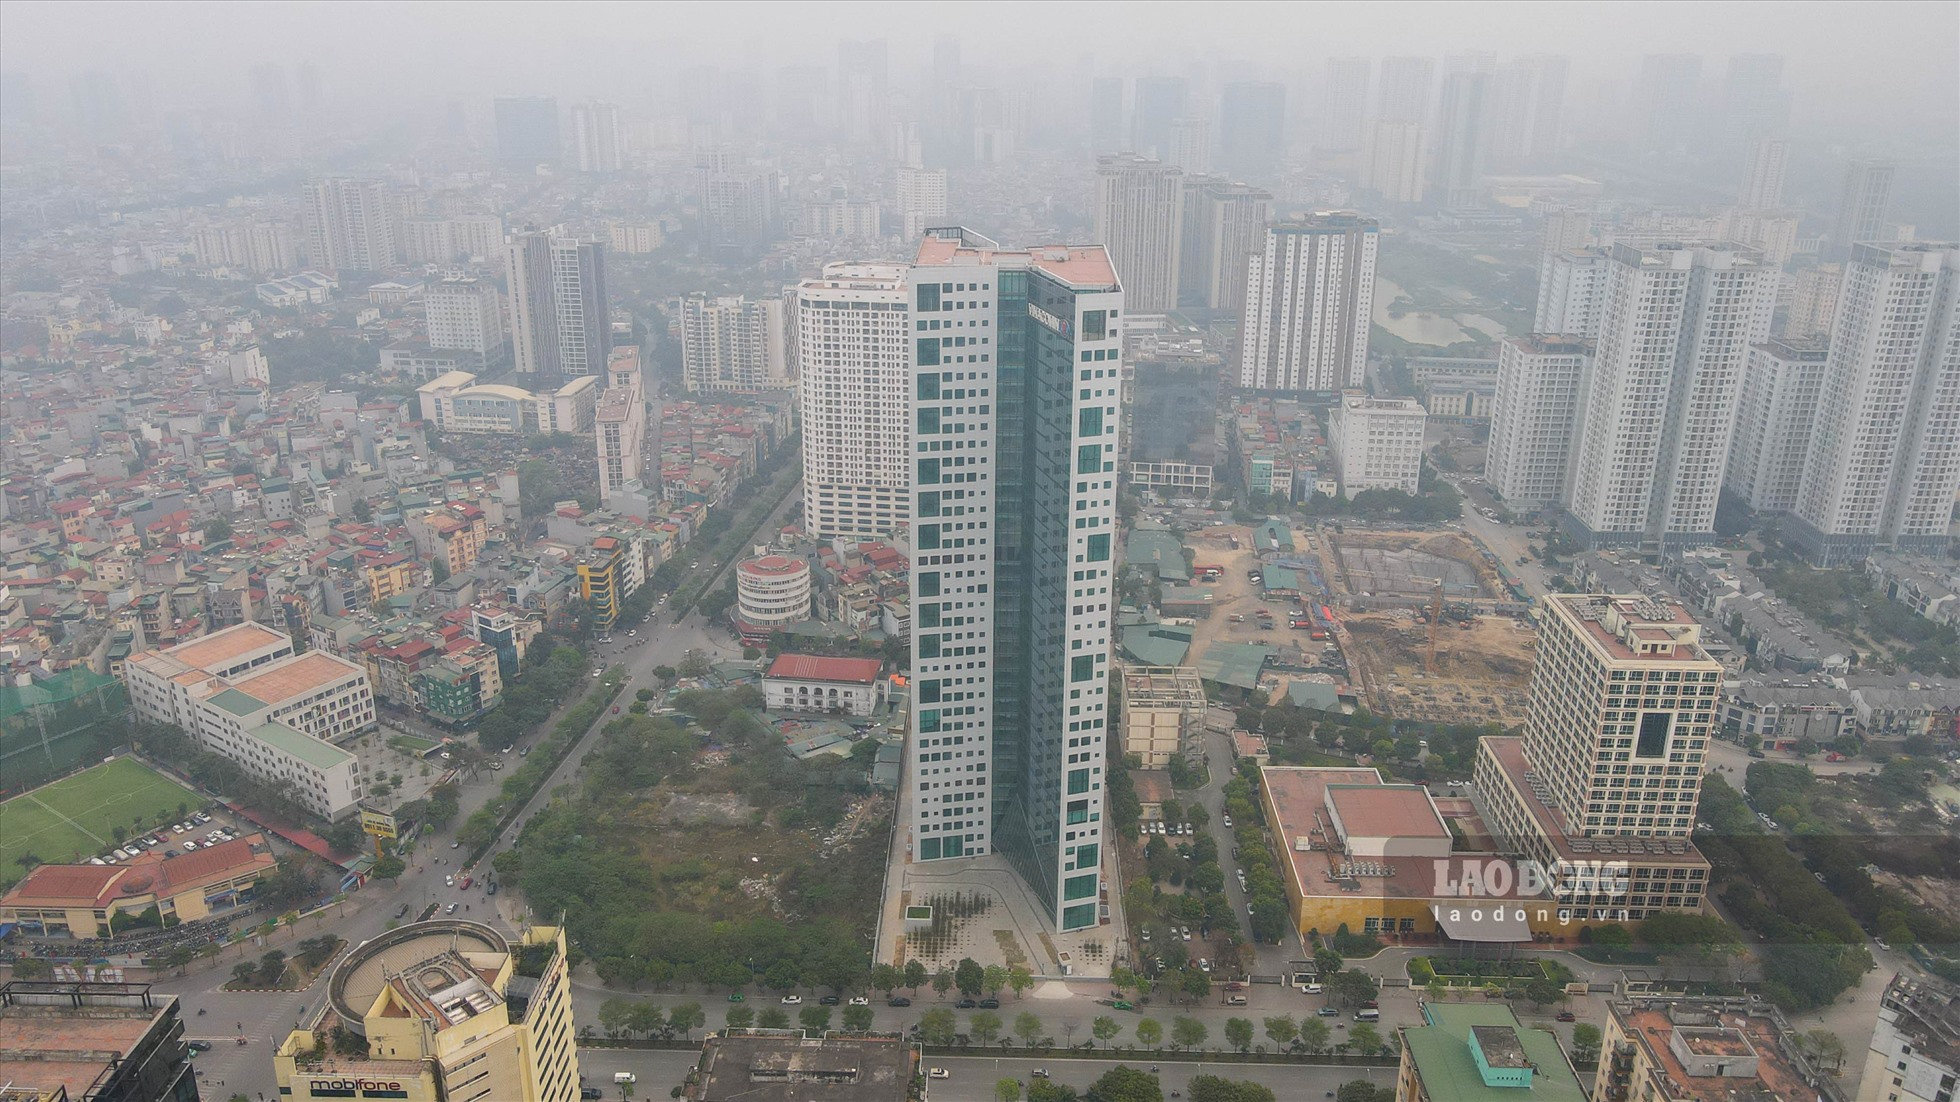 Dự án trụ sở Vinacomin tại ngã tư đường Dương Đình Nghệ - Trung Kính (Cầu Giấy, Hà Nội) được phê duyệt năm 2012 với tổng mức đầu tư 3.771 tỉ đồng. Ảnh: Phan Anh